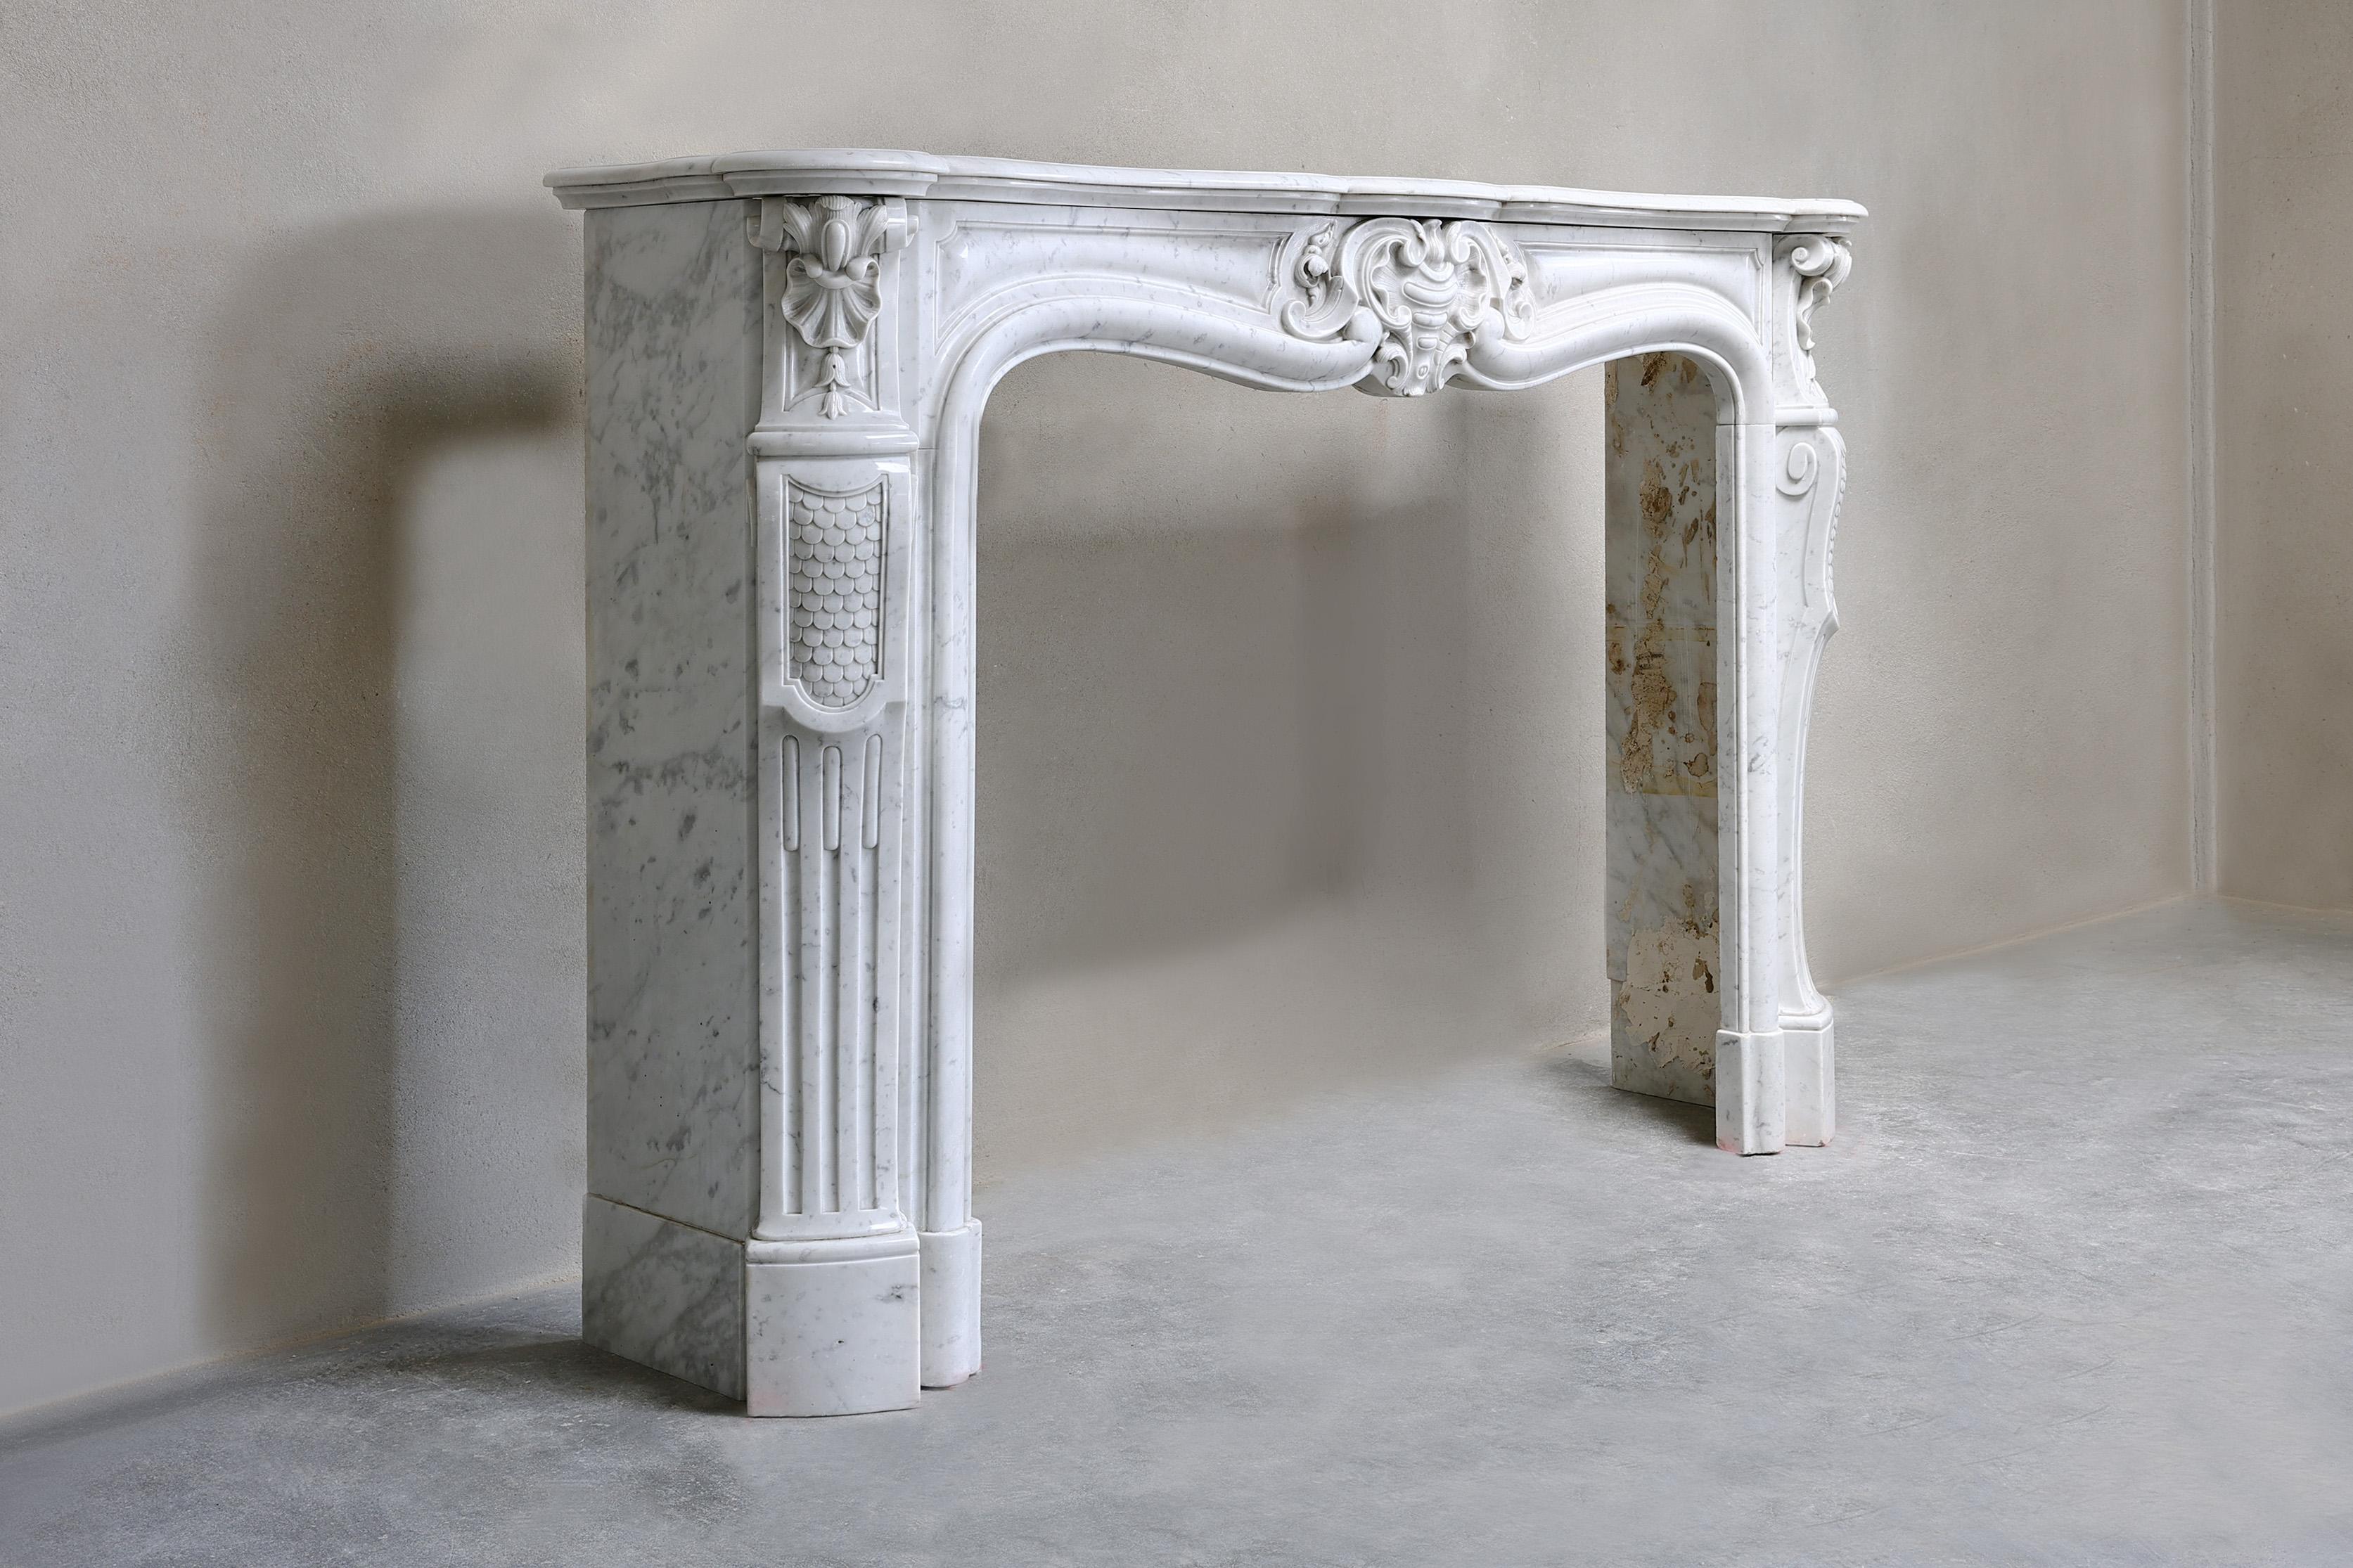 Sehr schöner Kamin aus weißem Carrara-Marmor aus dem 19. Jahrhundert. Carrara-Marmor kommt ursprünglich aus Italien, aus der Stadt Carrara. Diese Stadt wird auch die Stadt des Marmors genannt, weil es in der Umgebung von Carrara viele Marmorbrüche